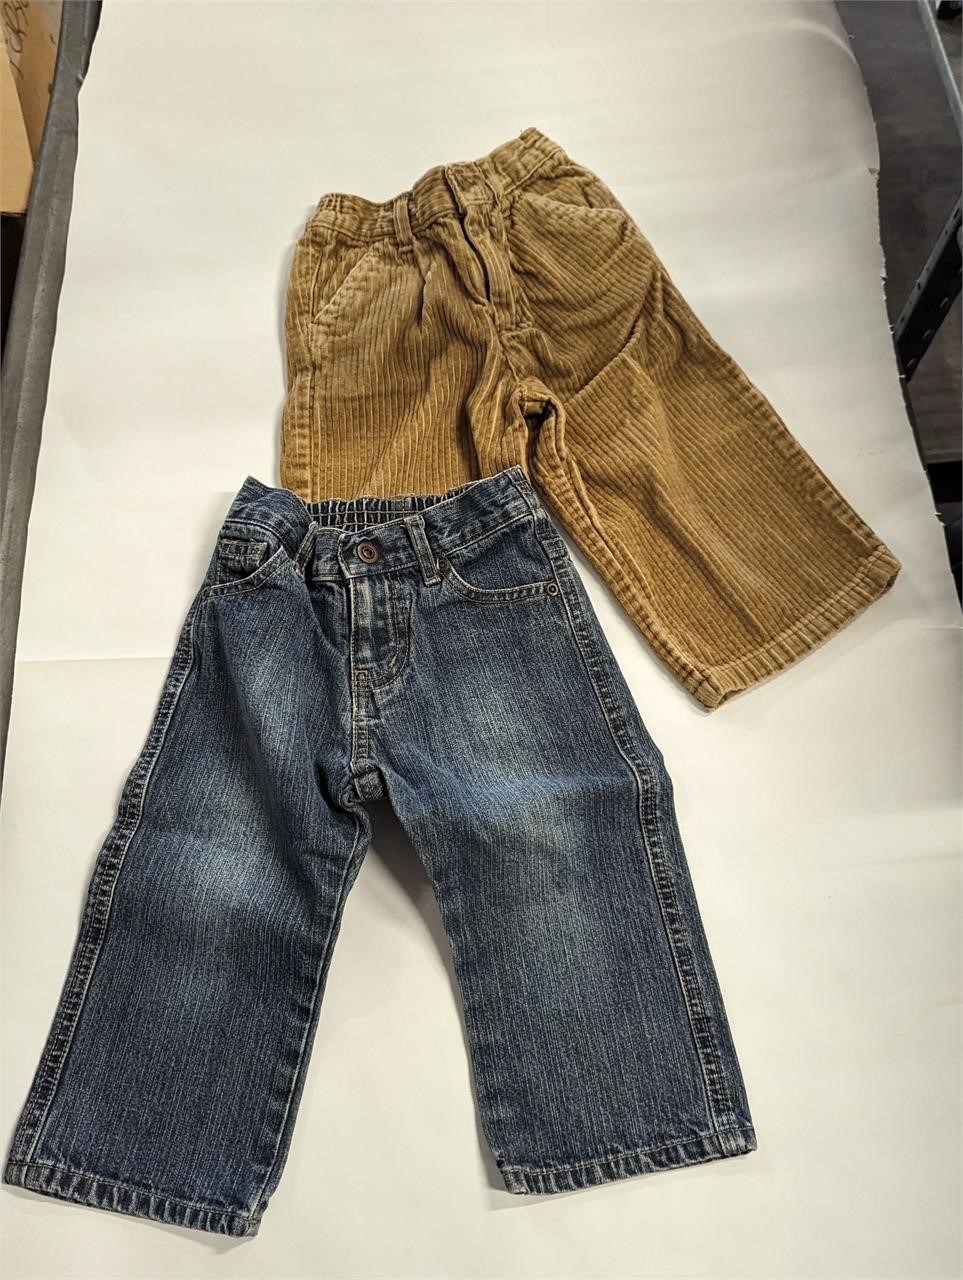 18 month pants & jeans